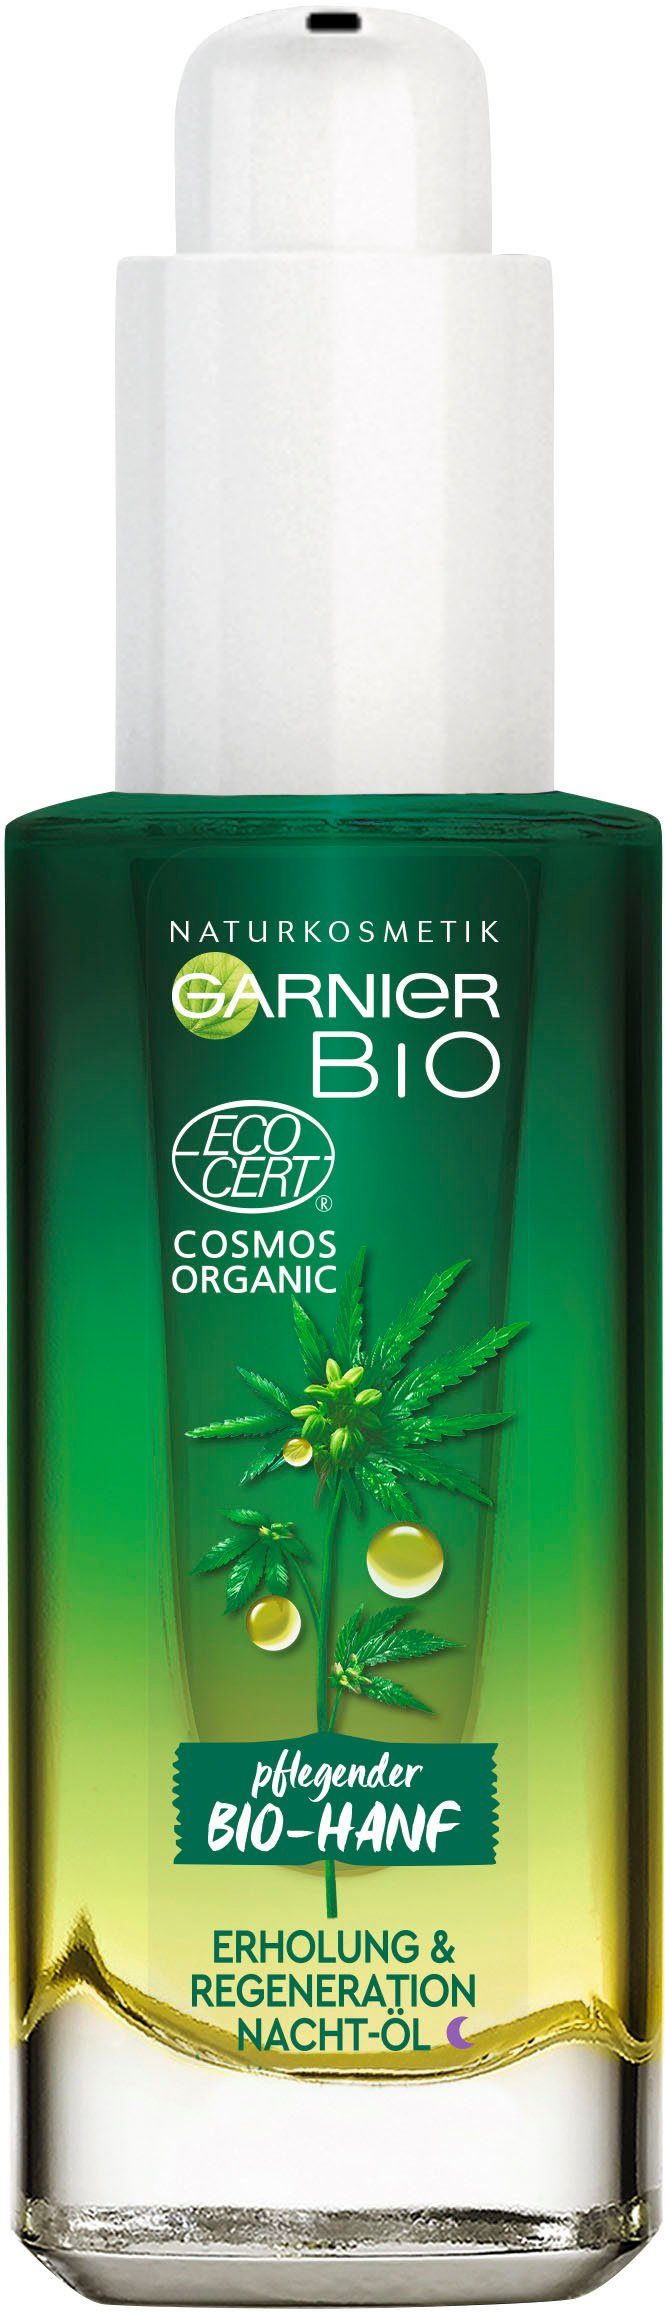 Bio-Hanf GARNIER Naturkosmetik Erholung Regeneration Gesichtsöl & Nacht-Öl,